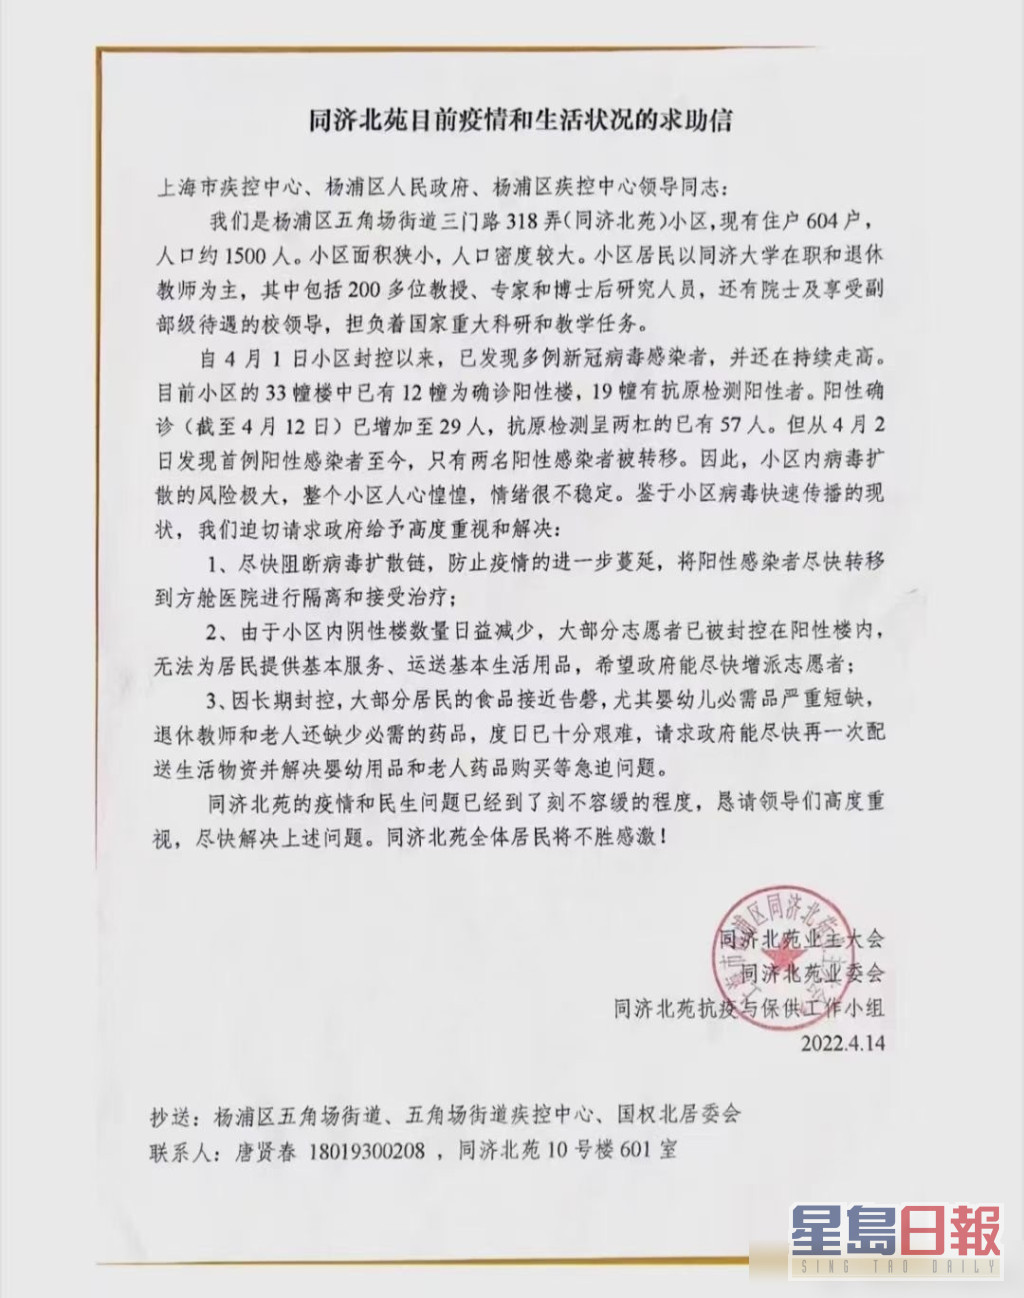 网上流传一封上海同济大学教工发出的求助信。网图